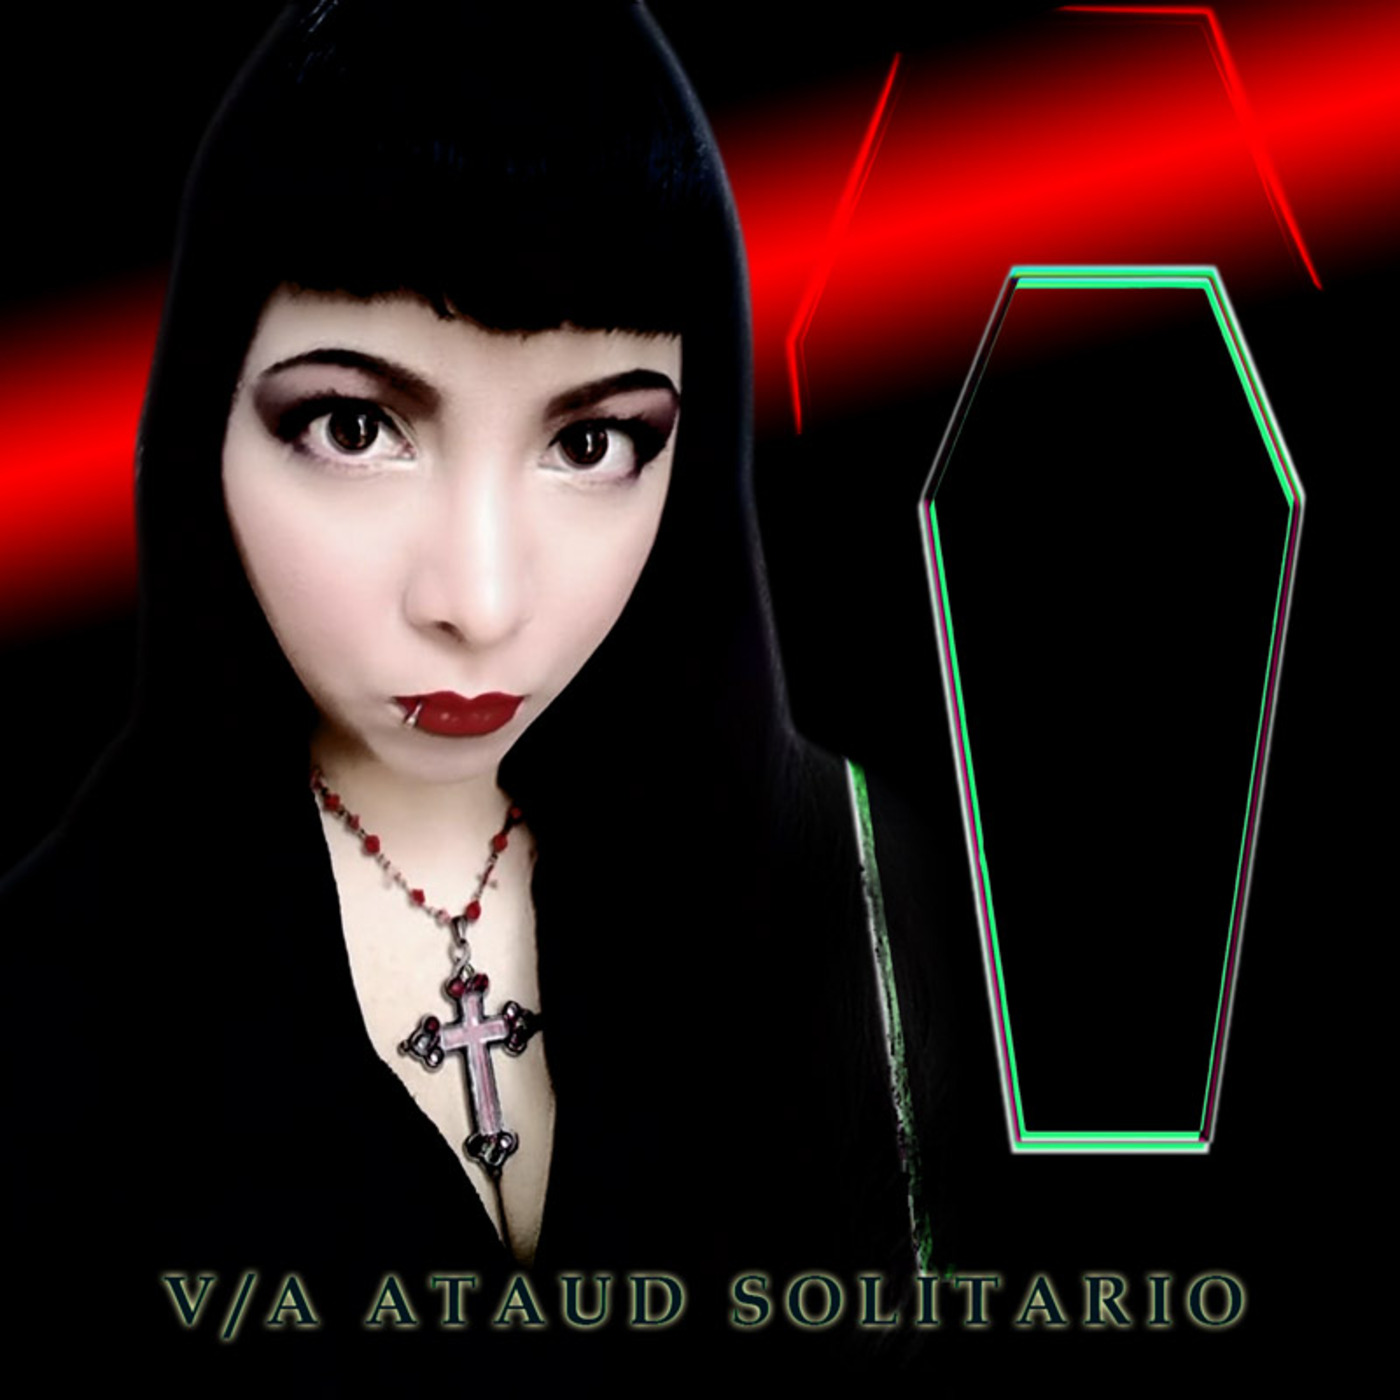 02 - Insatiable Void - Ataud Solitario (feat Humanfobia)